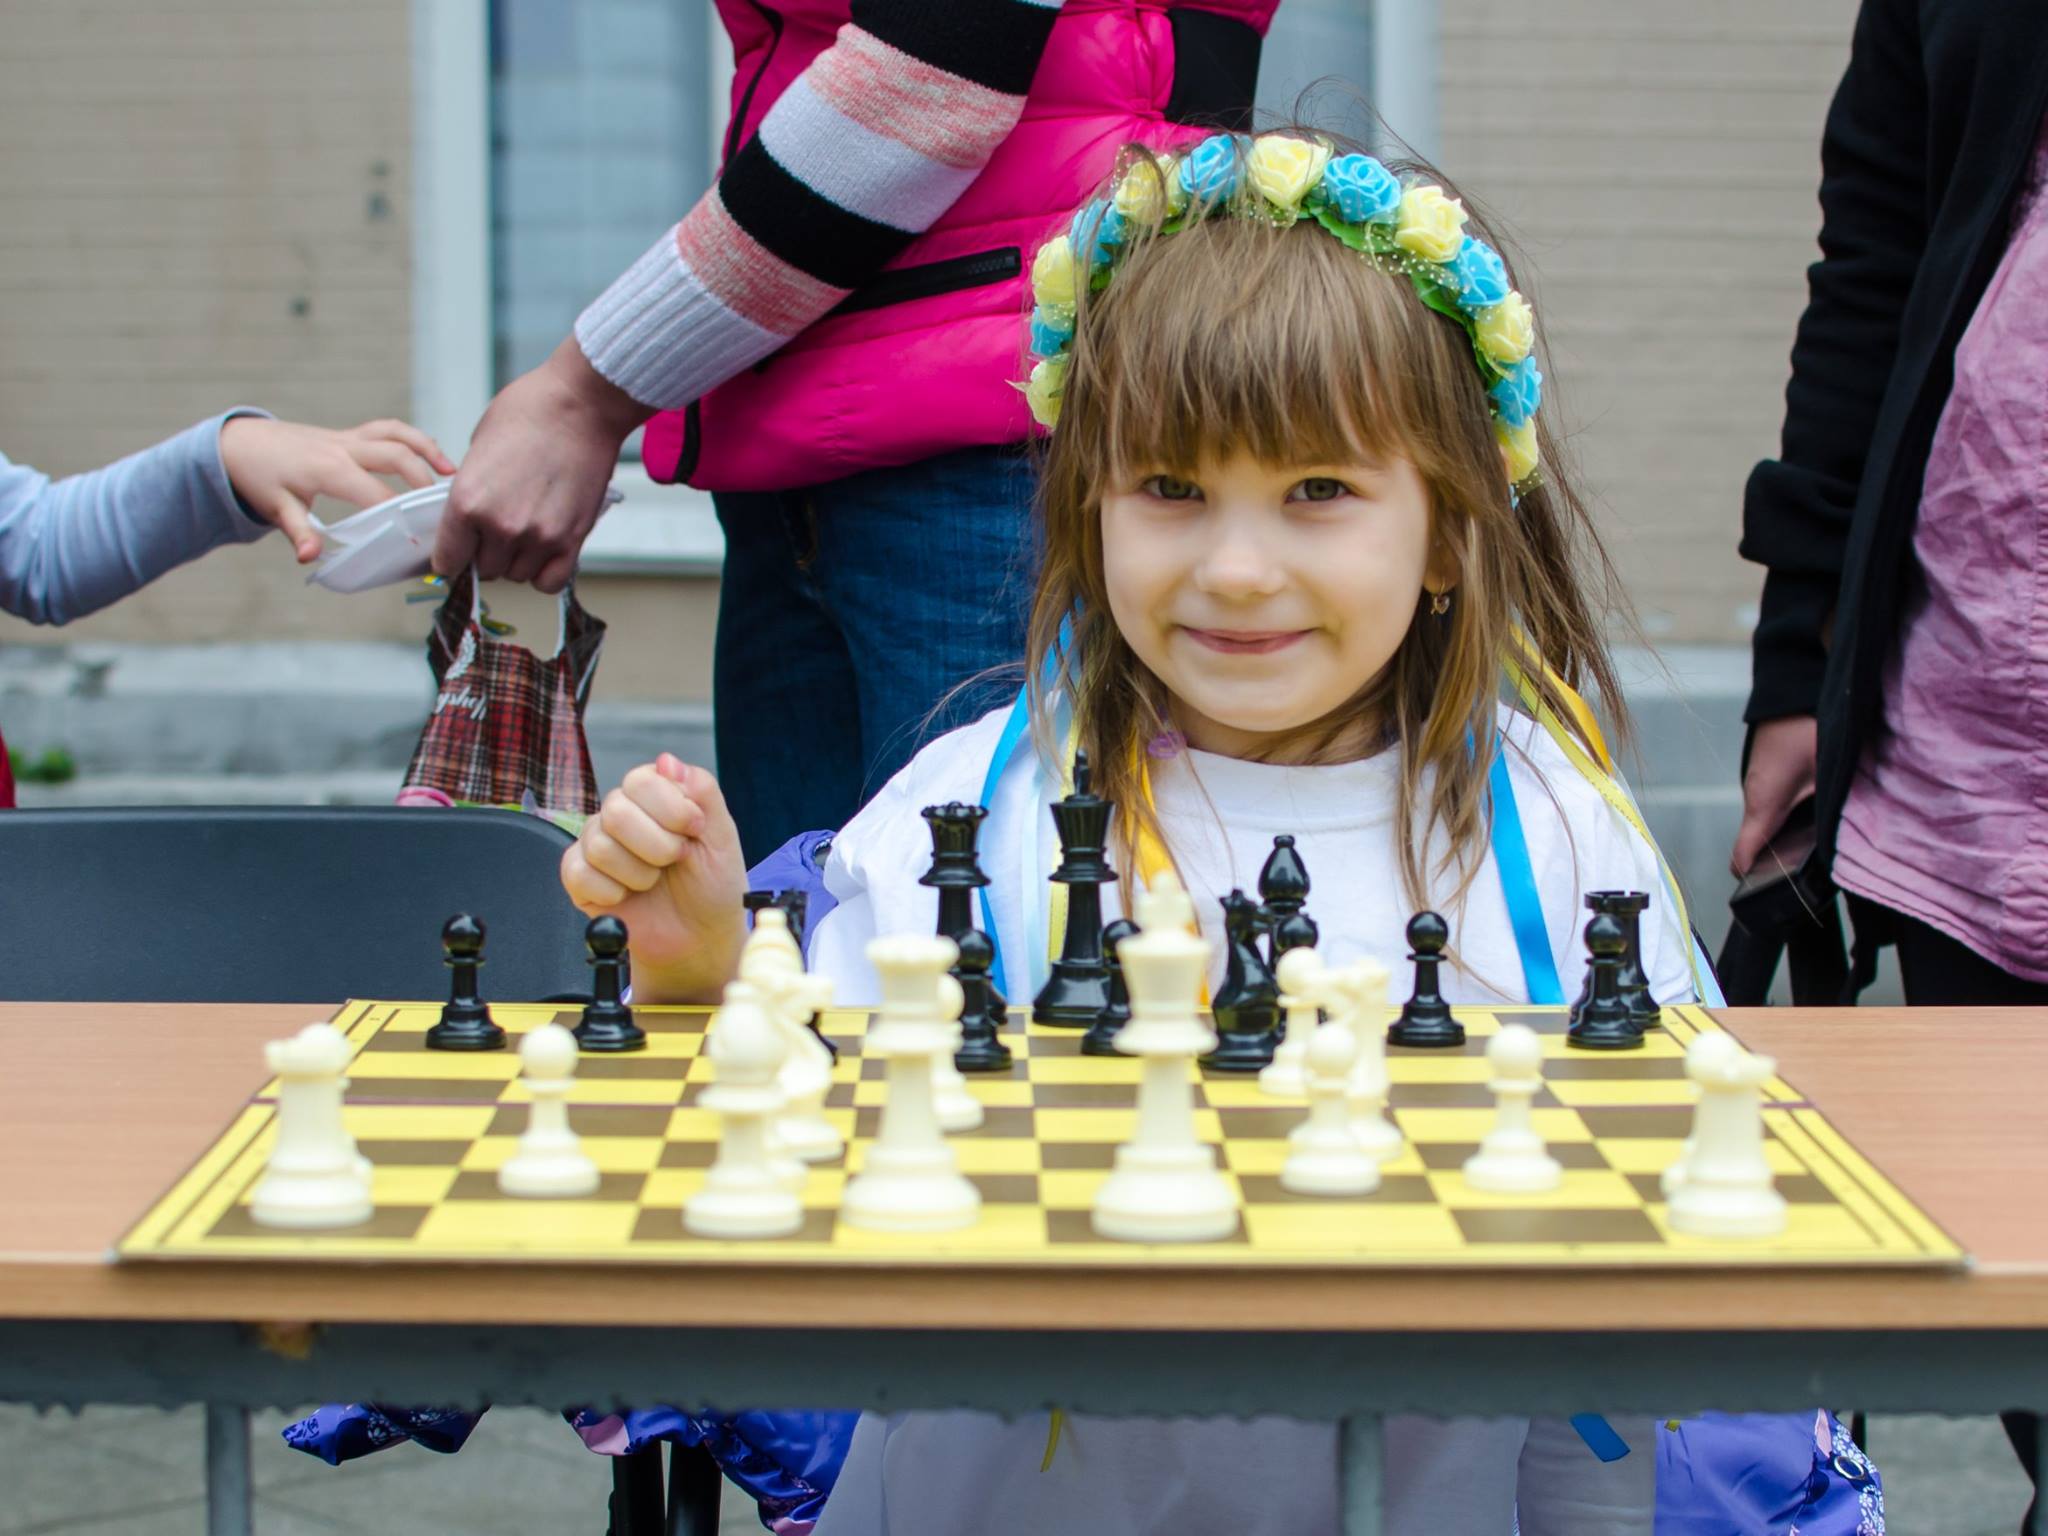 22-24 лютого у Житомирі відбудеться чемпіонат міста з шахів серед дітей до 8 років